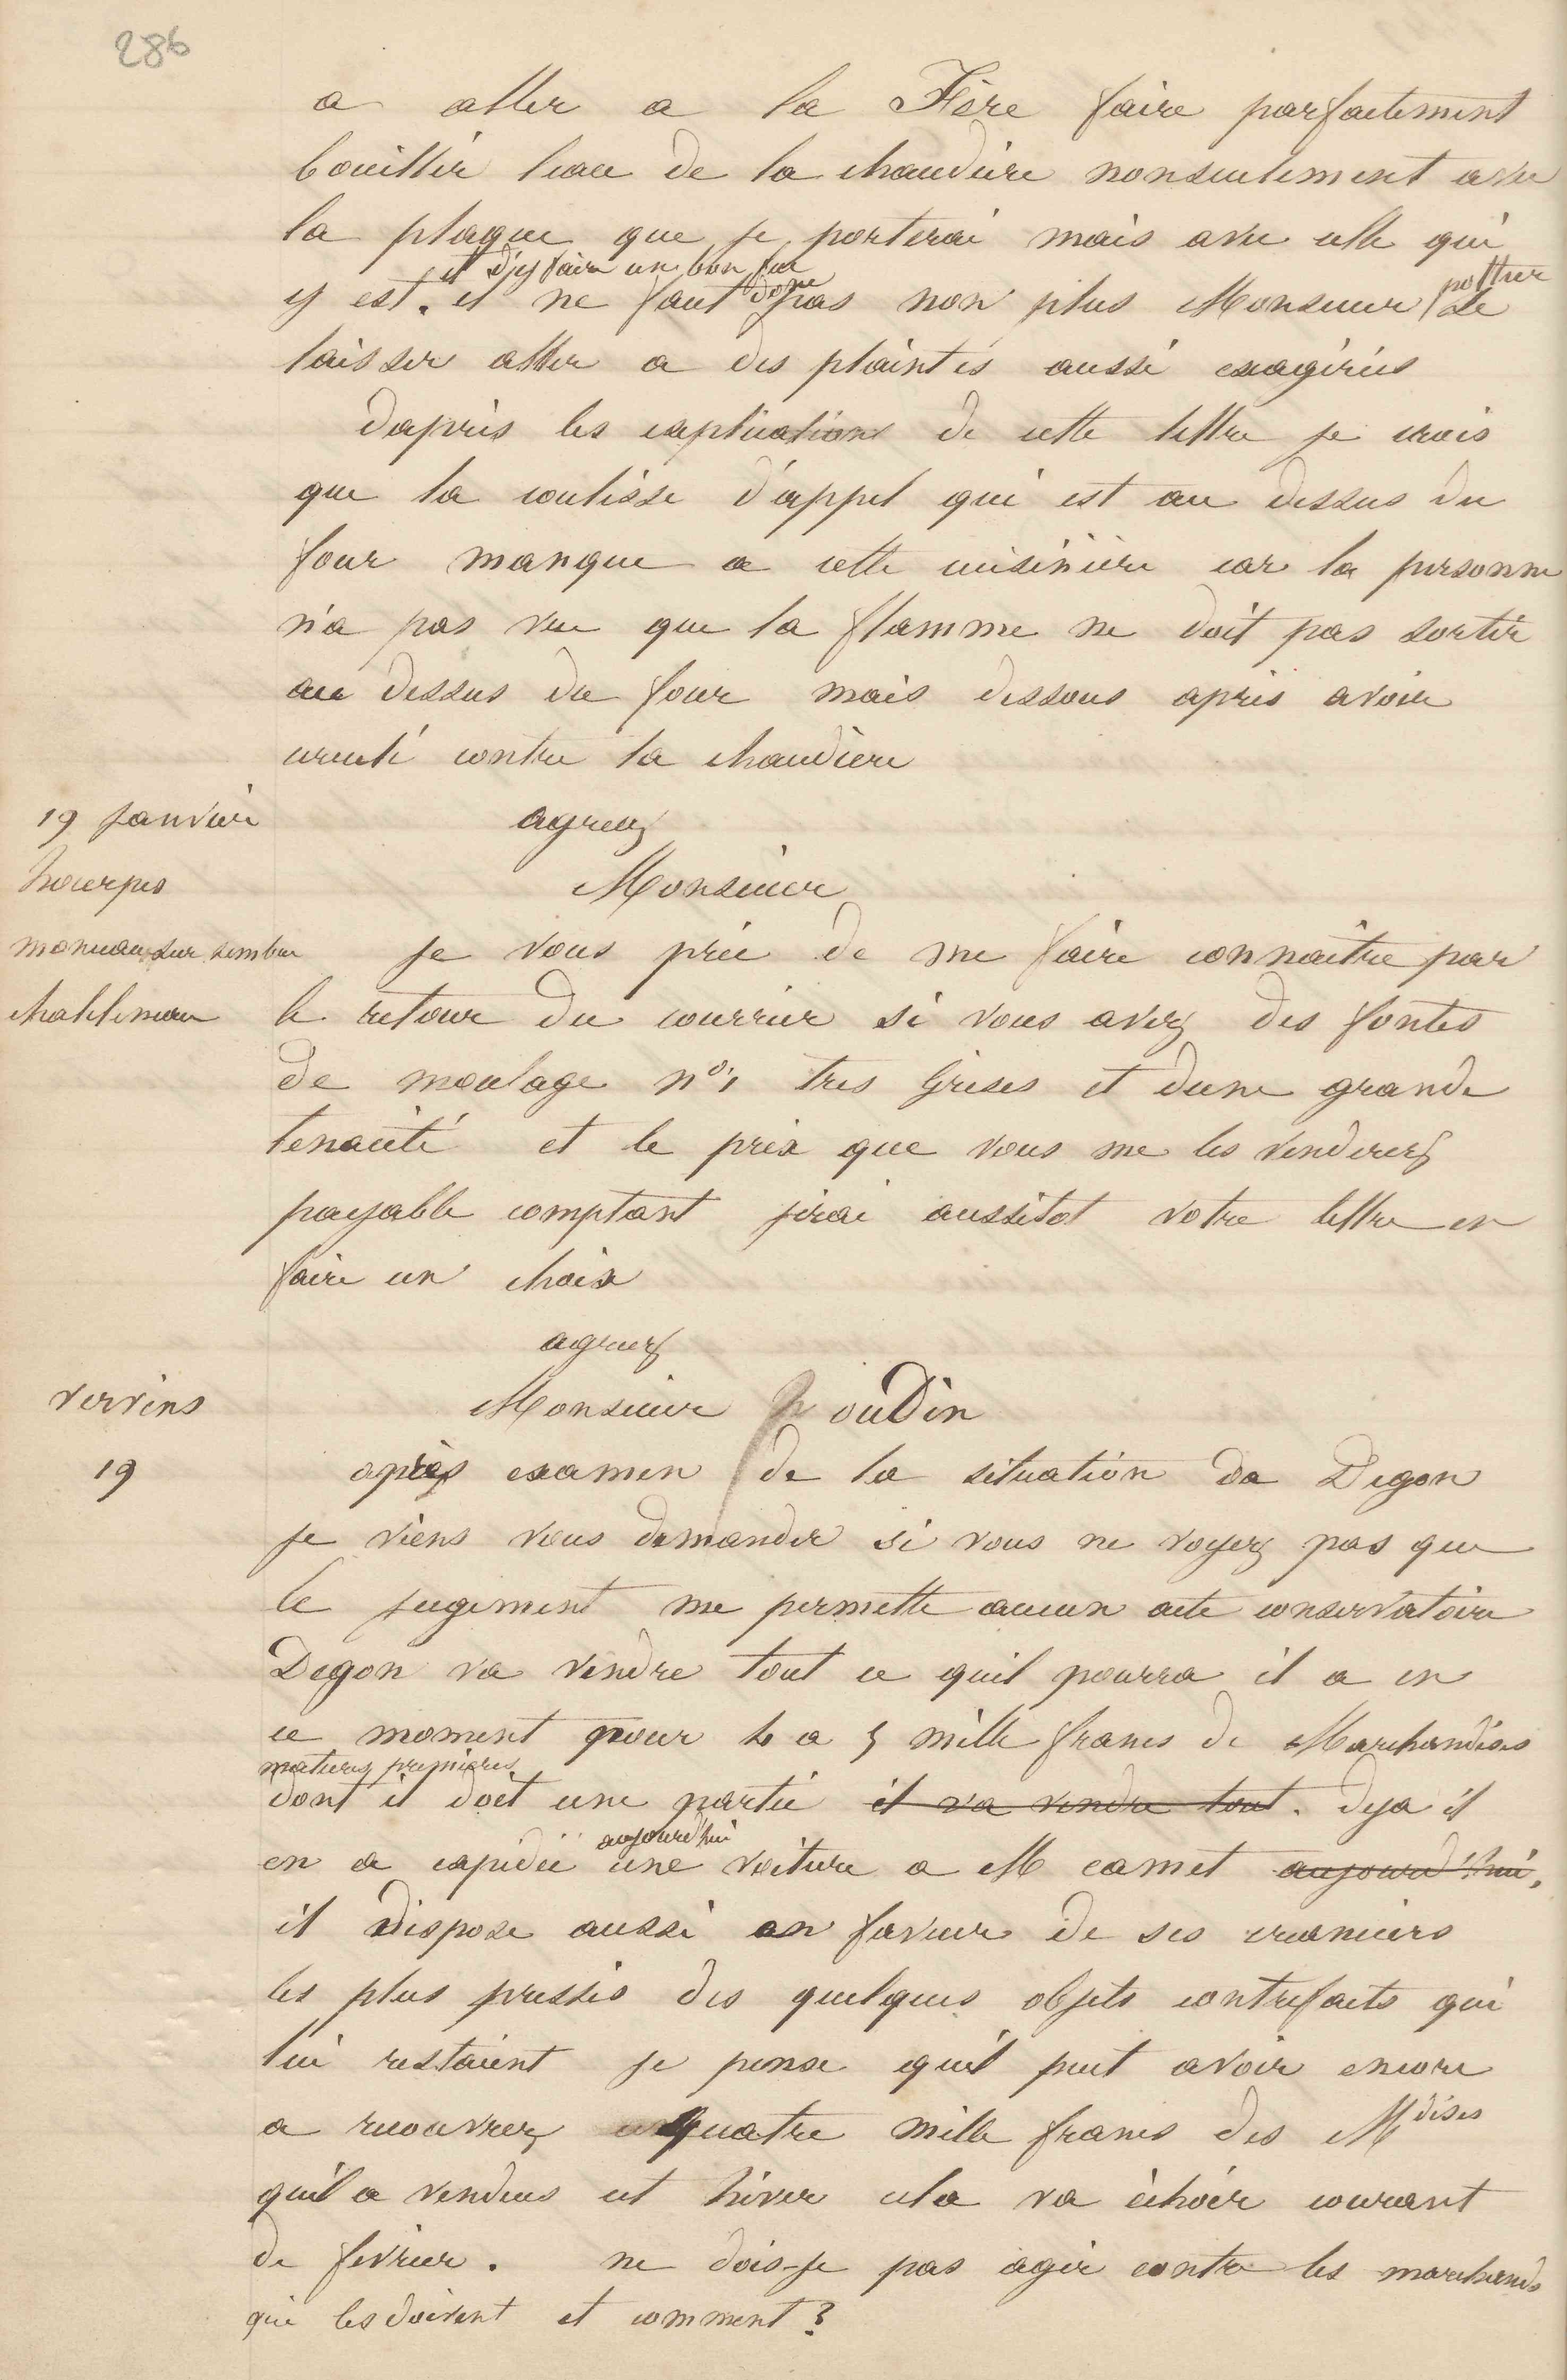 Jean-Baptiste André Godin à trois sociétés exploitant des hauts-fourneaux en Belgique, 19 janvier 1849